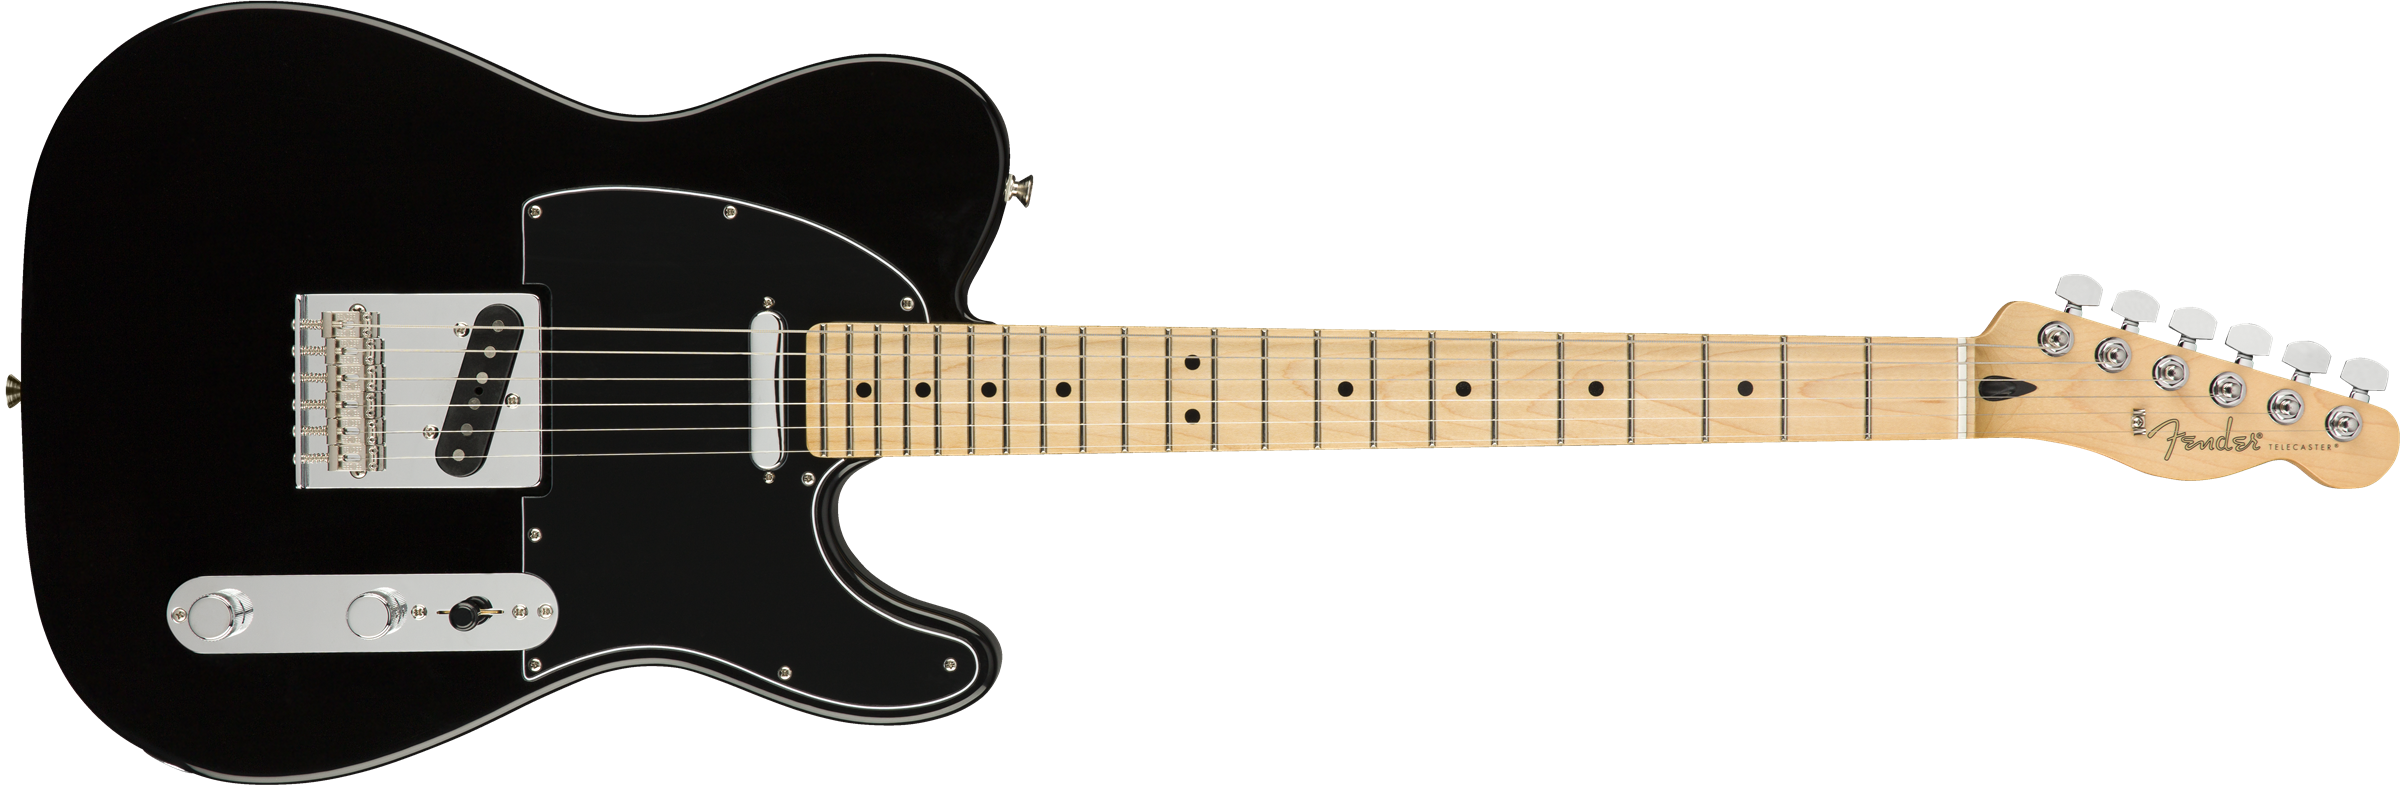 Fender Tele Player Mex Mn - Black - Televorm elektrische gitaar - Variation 1